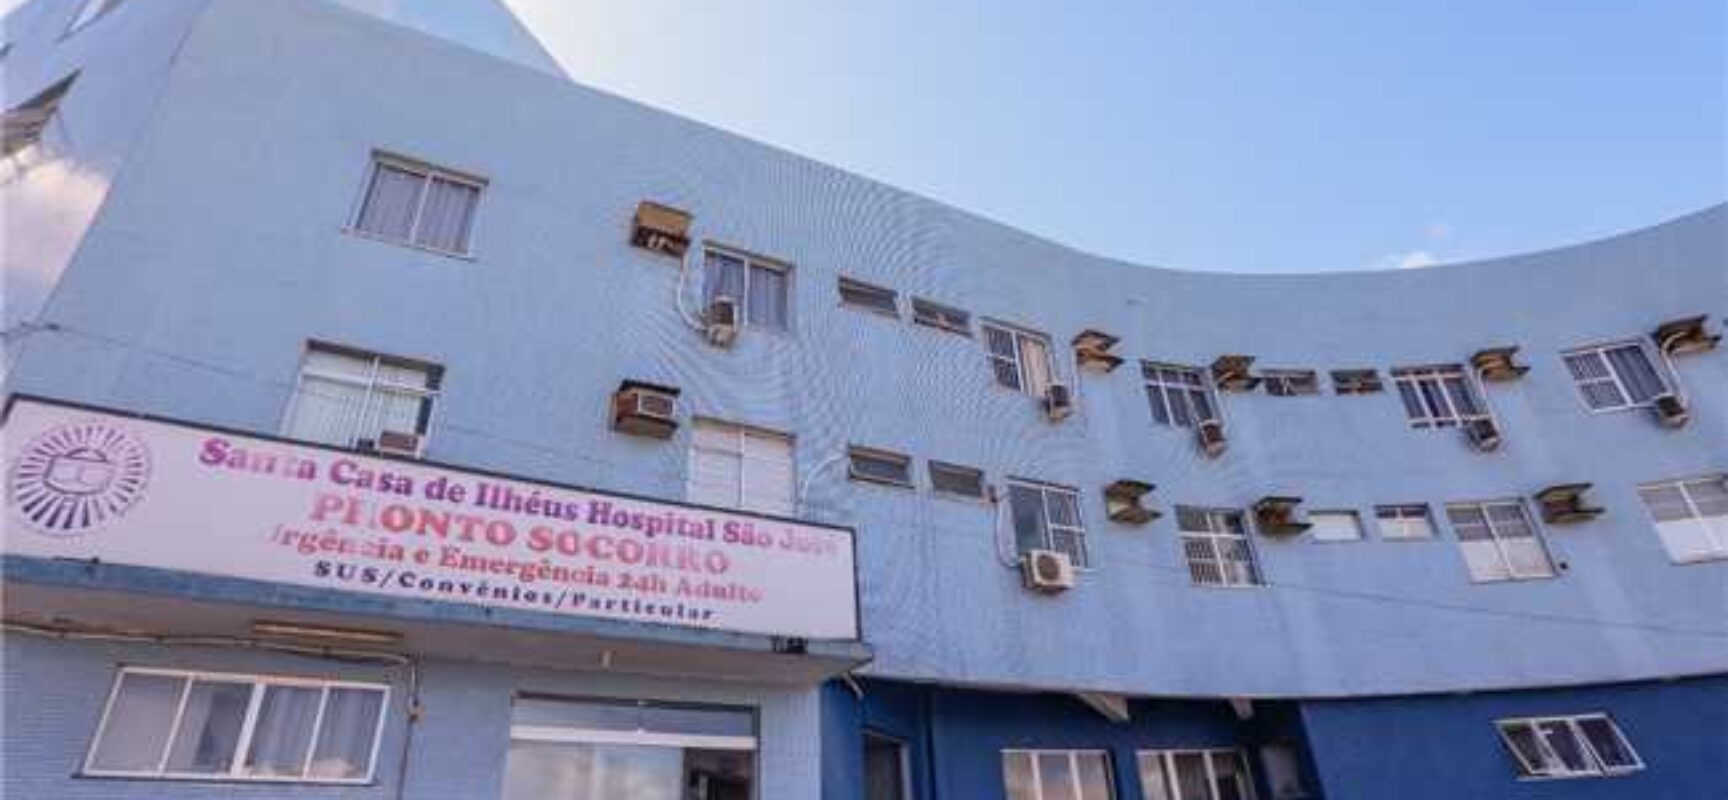 Ilhéus: Acordo garante atendimento na maternidade do Hospital São José